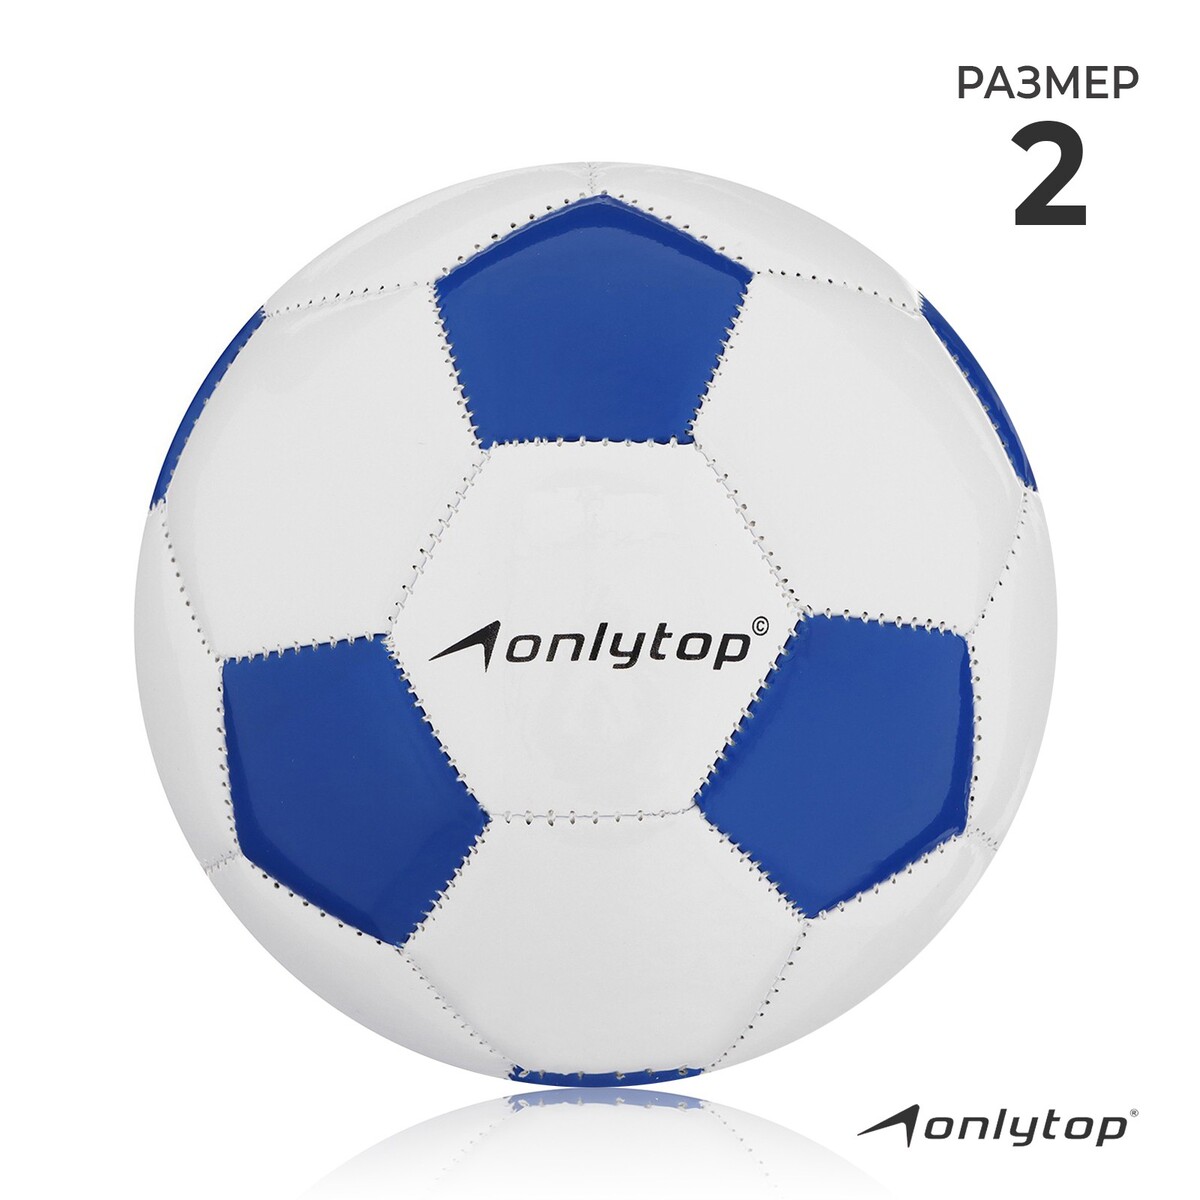 Мяч футбольный onlytop classic, pvc, машинная сшивка, 32 панели, р. 2 мяч футзальный torres futsal resist pu полугибридная сшивка 24 панели р 4